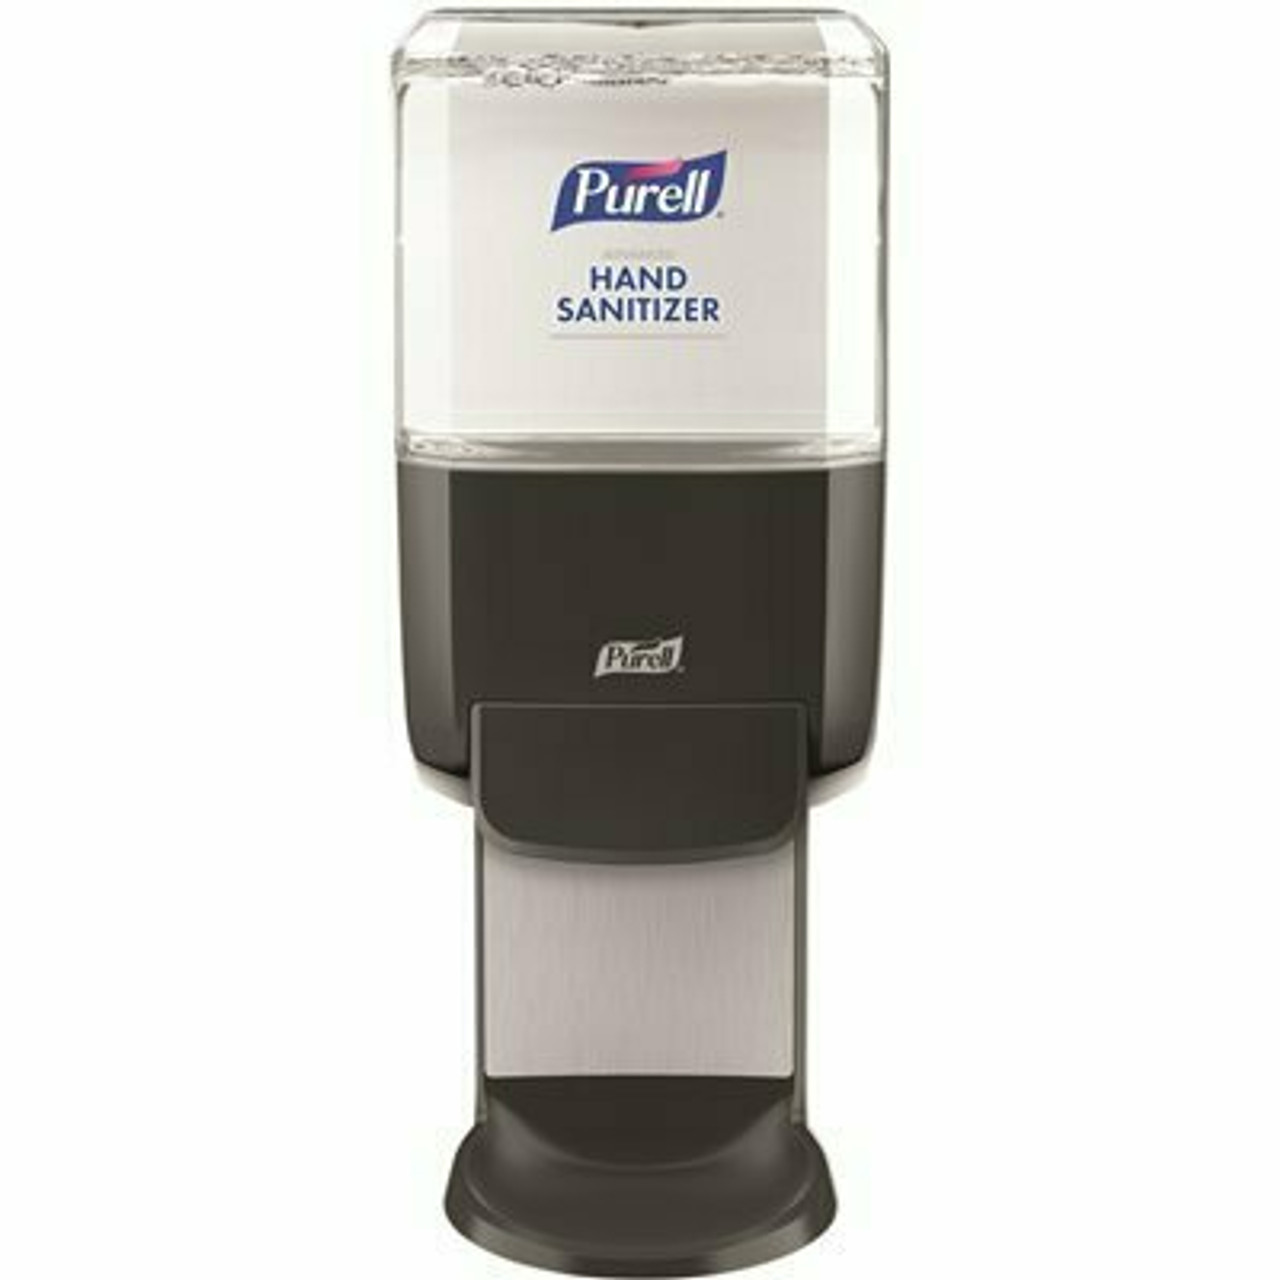 Purell Es4 Push-Style Hand Sanitizer Dispenser, Graphite, For 1200 Ml Es4 Hand Sanitizer Refills